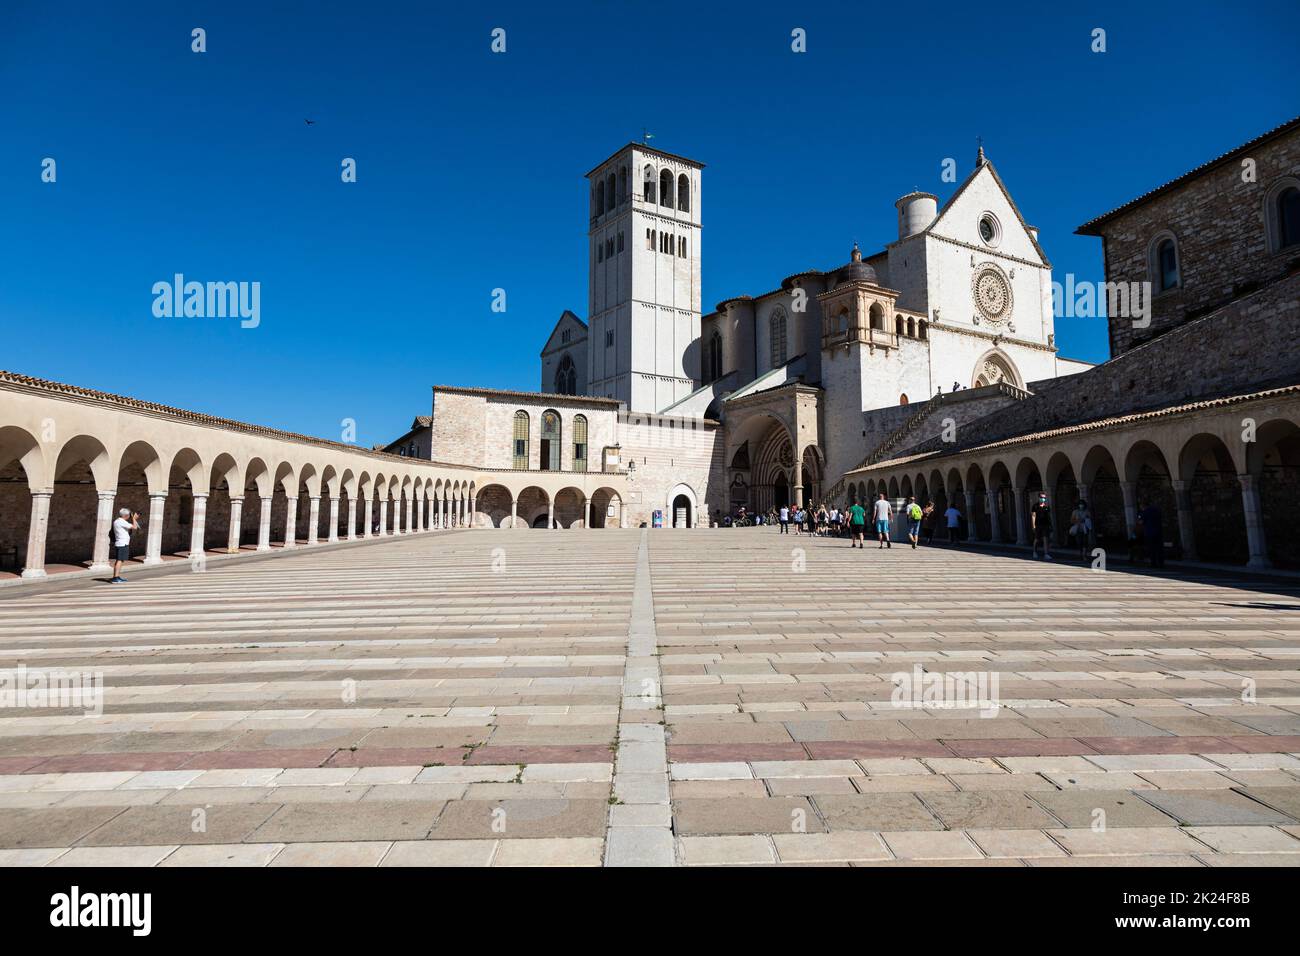 Assisi Dorf in Umbrien, Italien - circa Juni 2021: Die wichtigste Basilika des Heiligen Franziskus in Italien (Basilica di San Francesco) Stockfoto